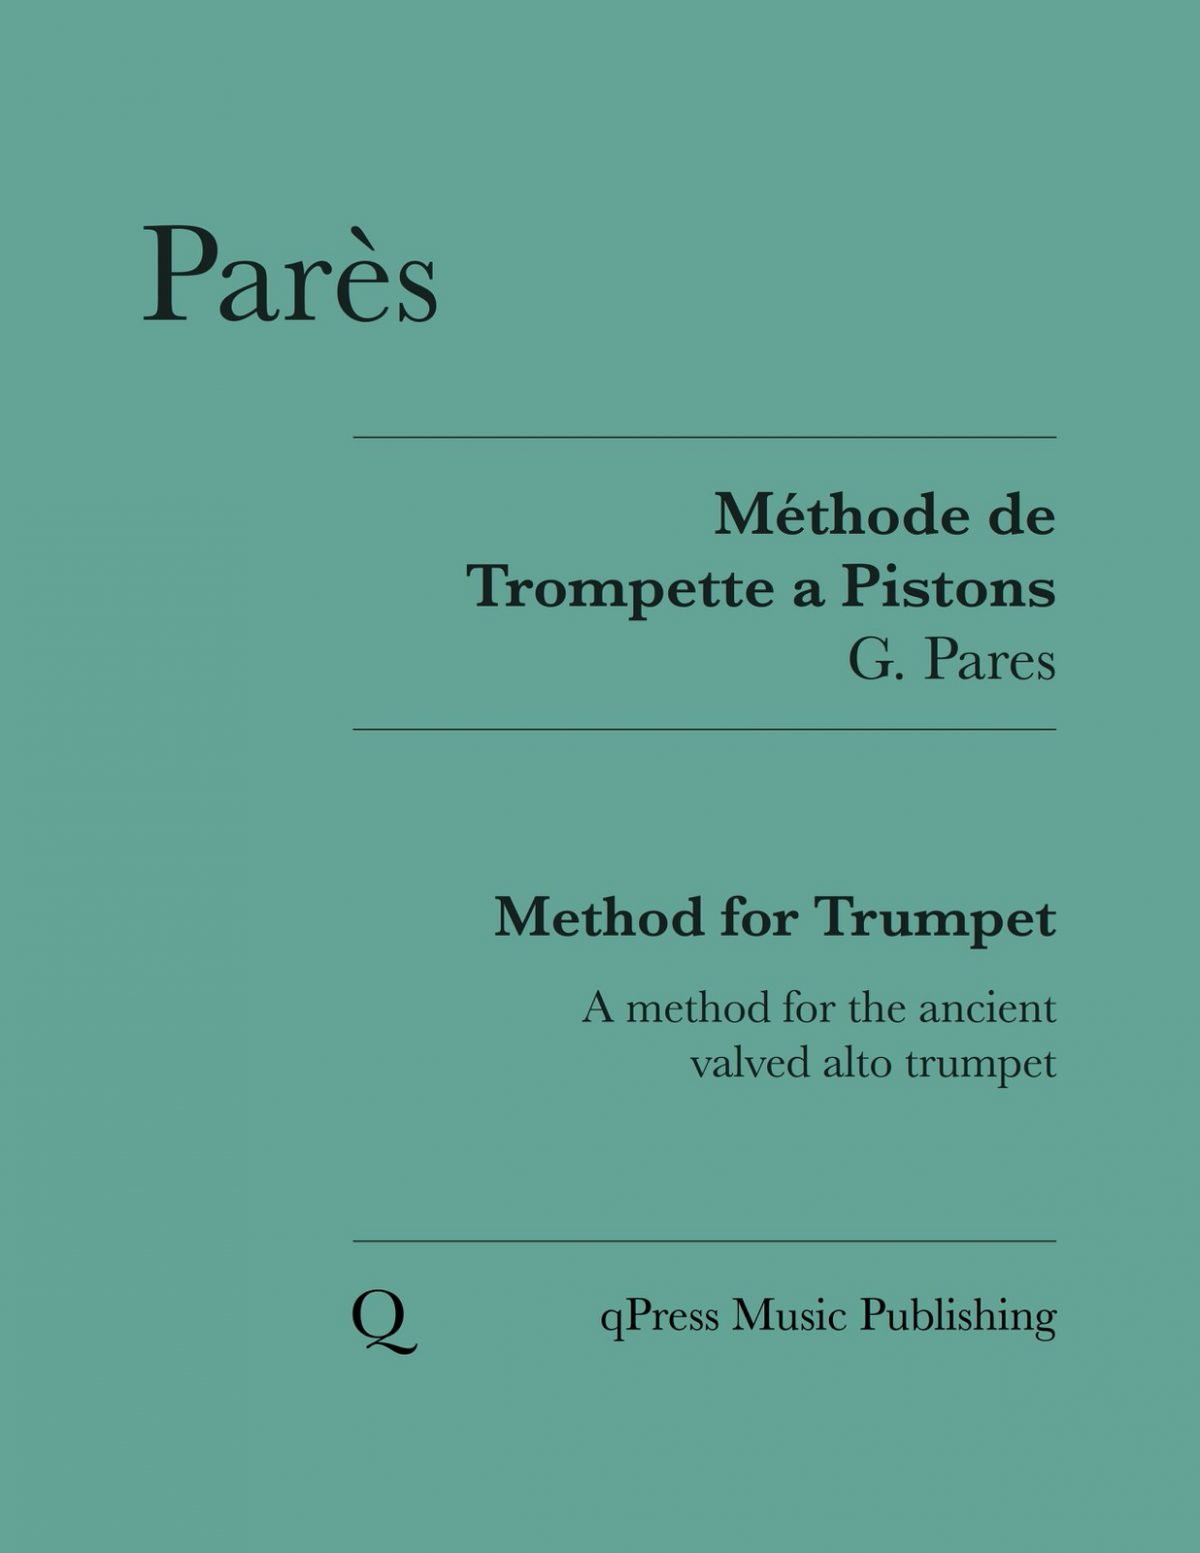 Parès, Methode de Trompette a Pistons-p01